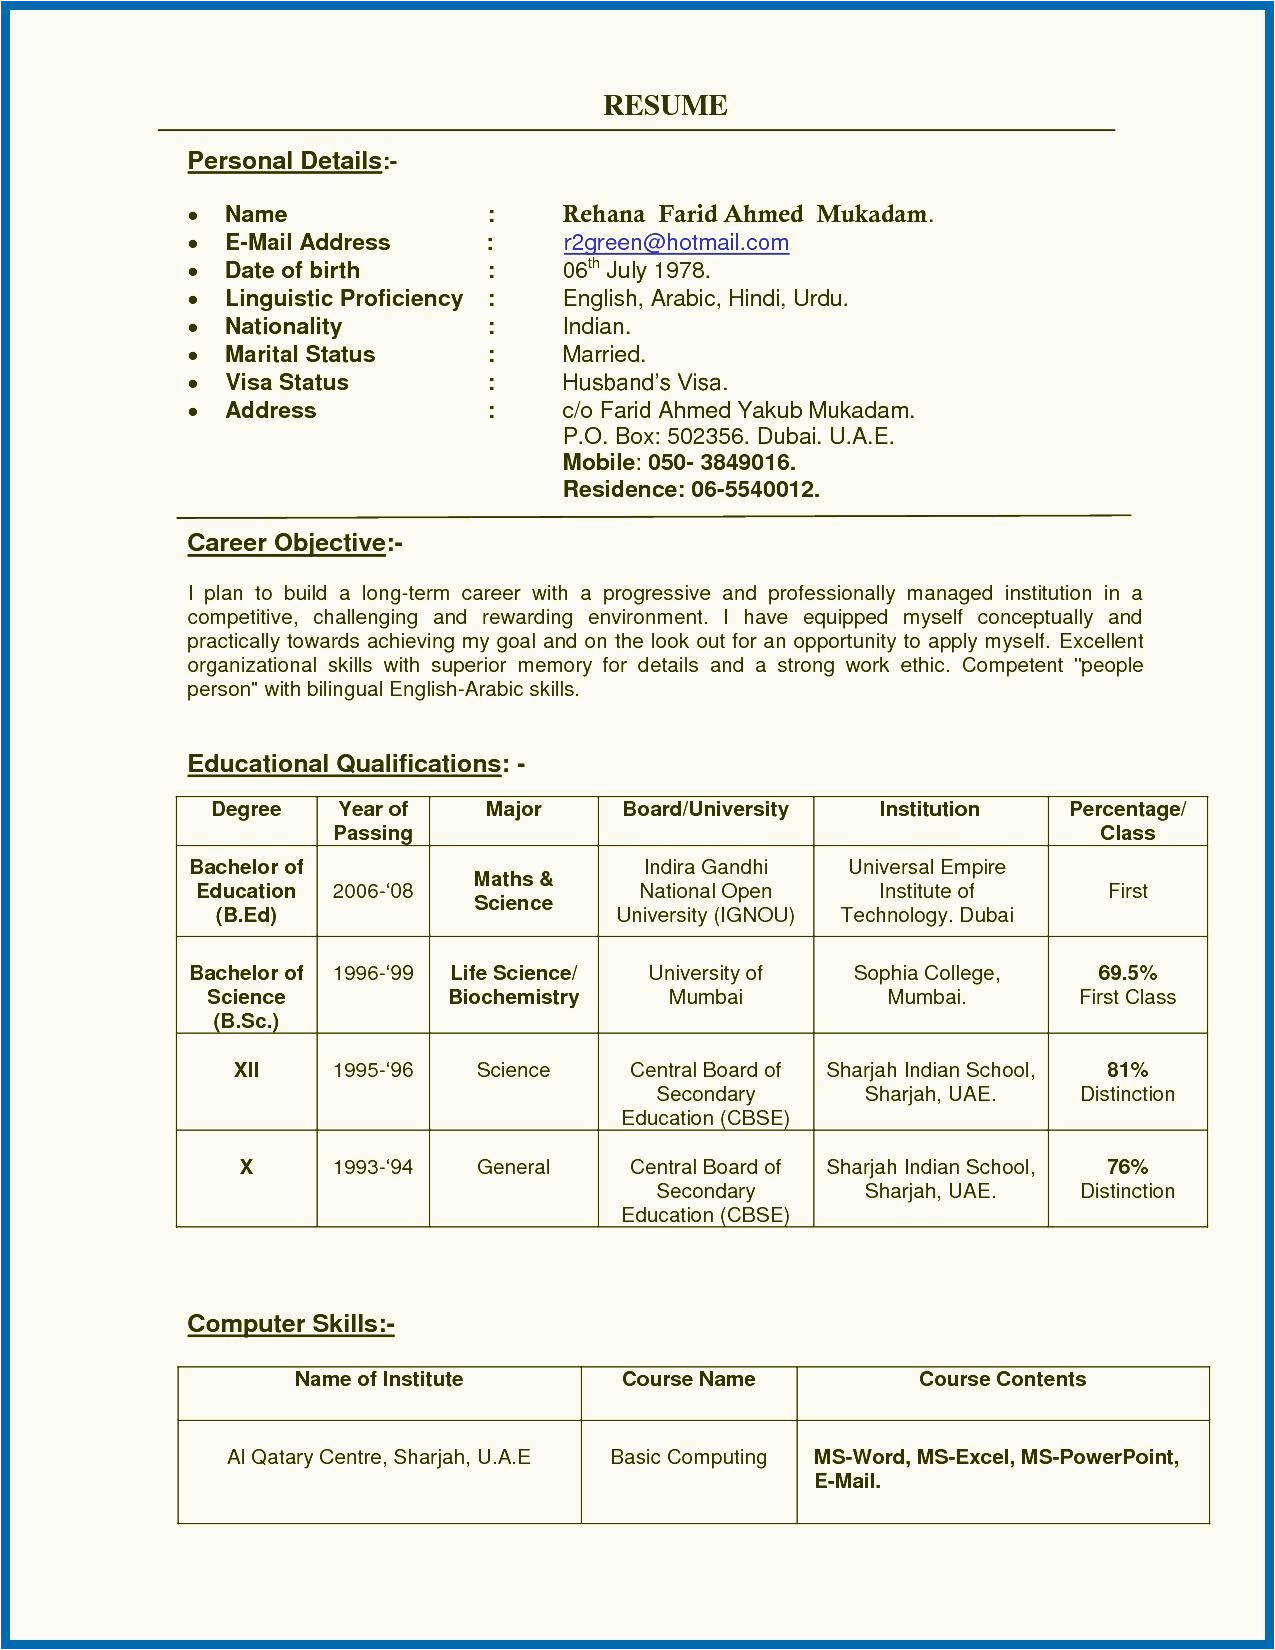 Sample Resume for School Teacher India Resume Of A Teacher India Teachers Resume format India